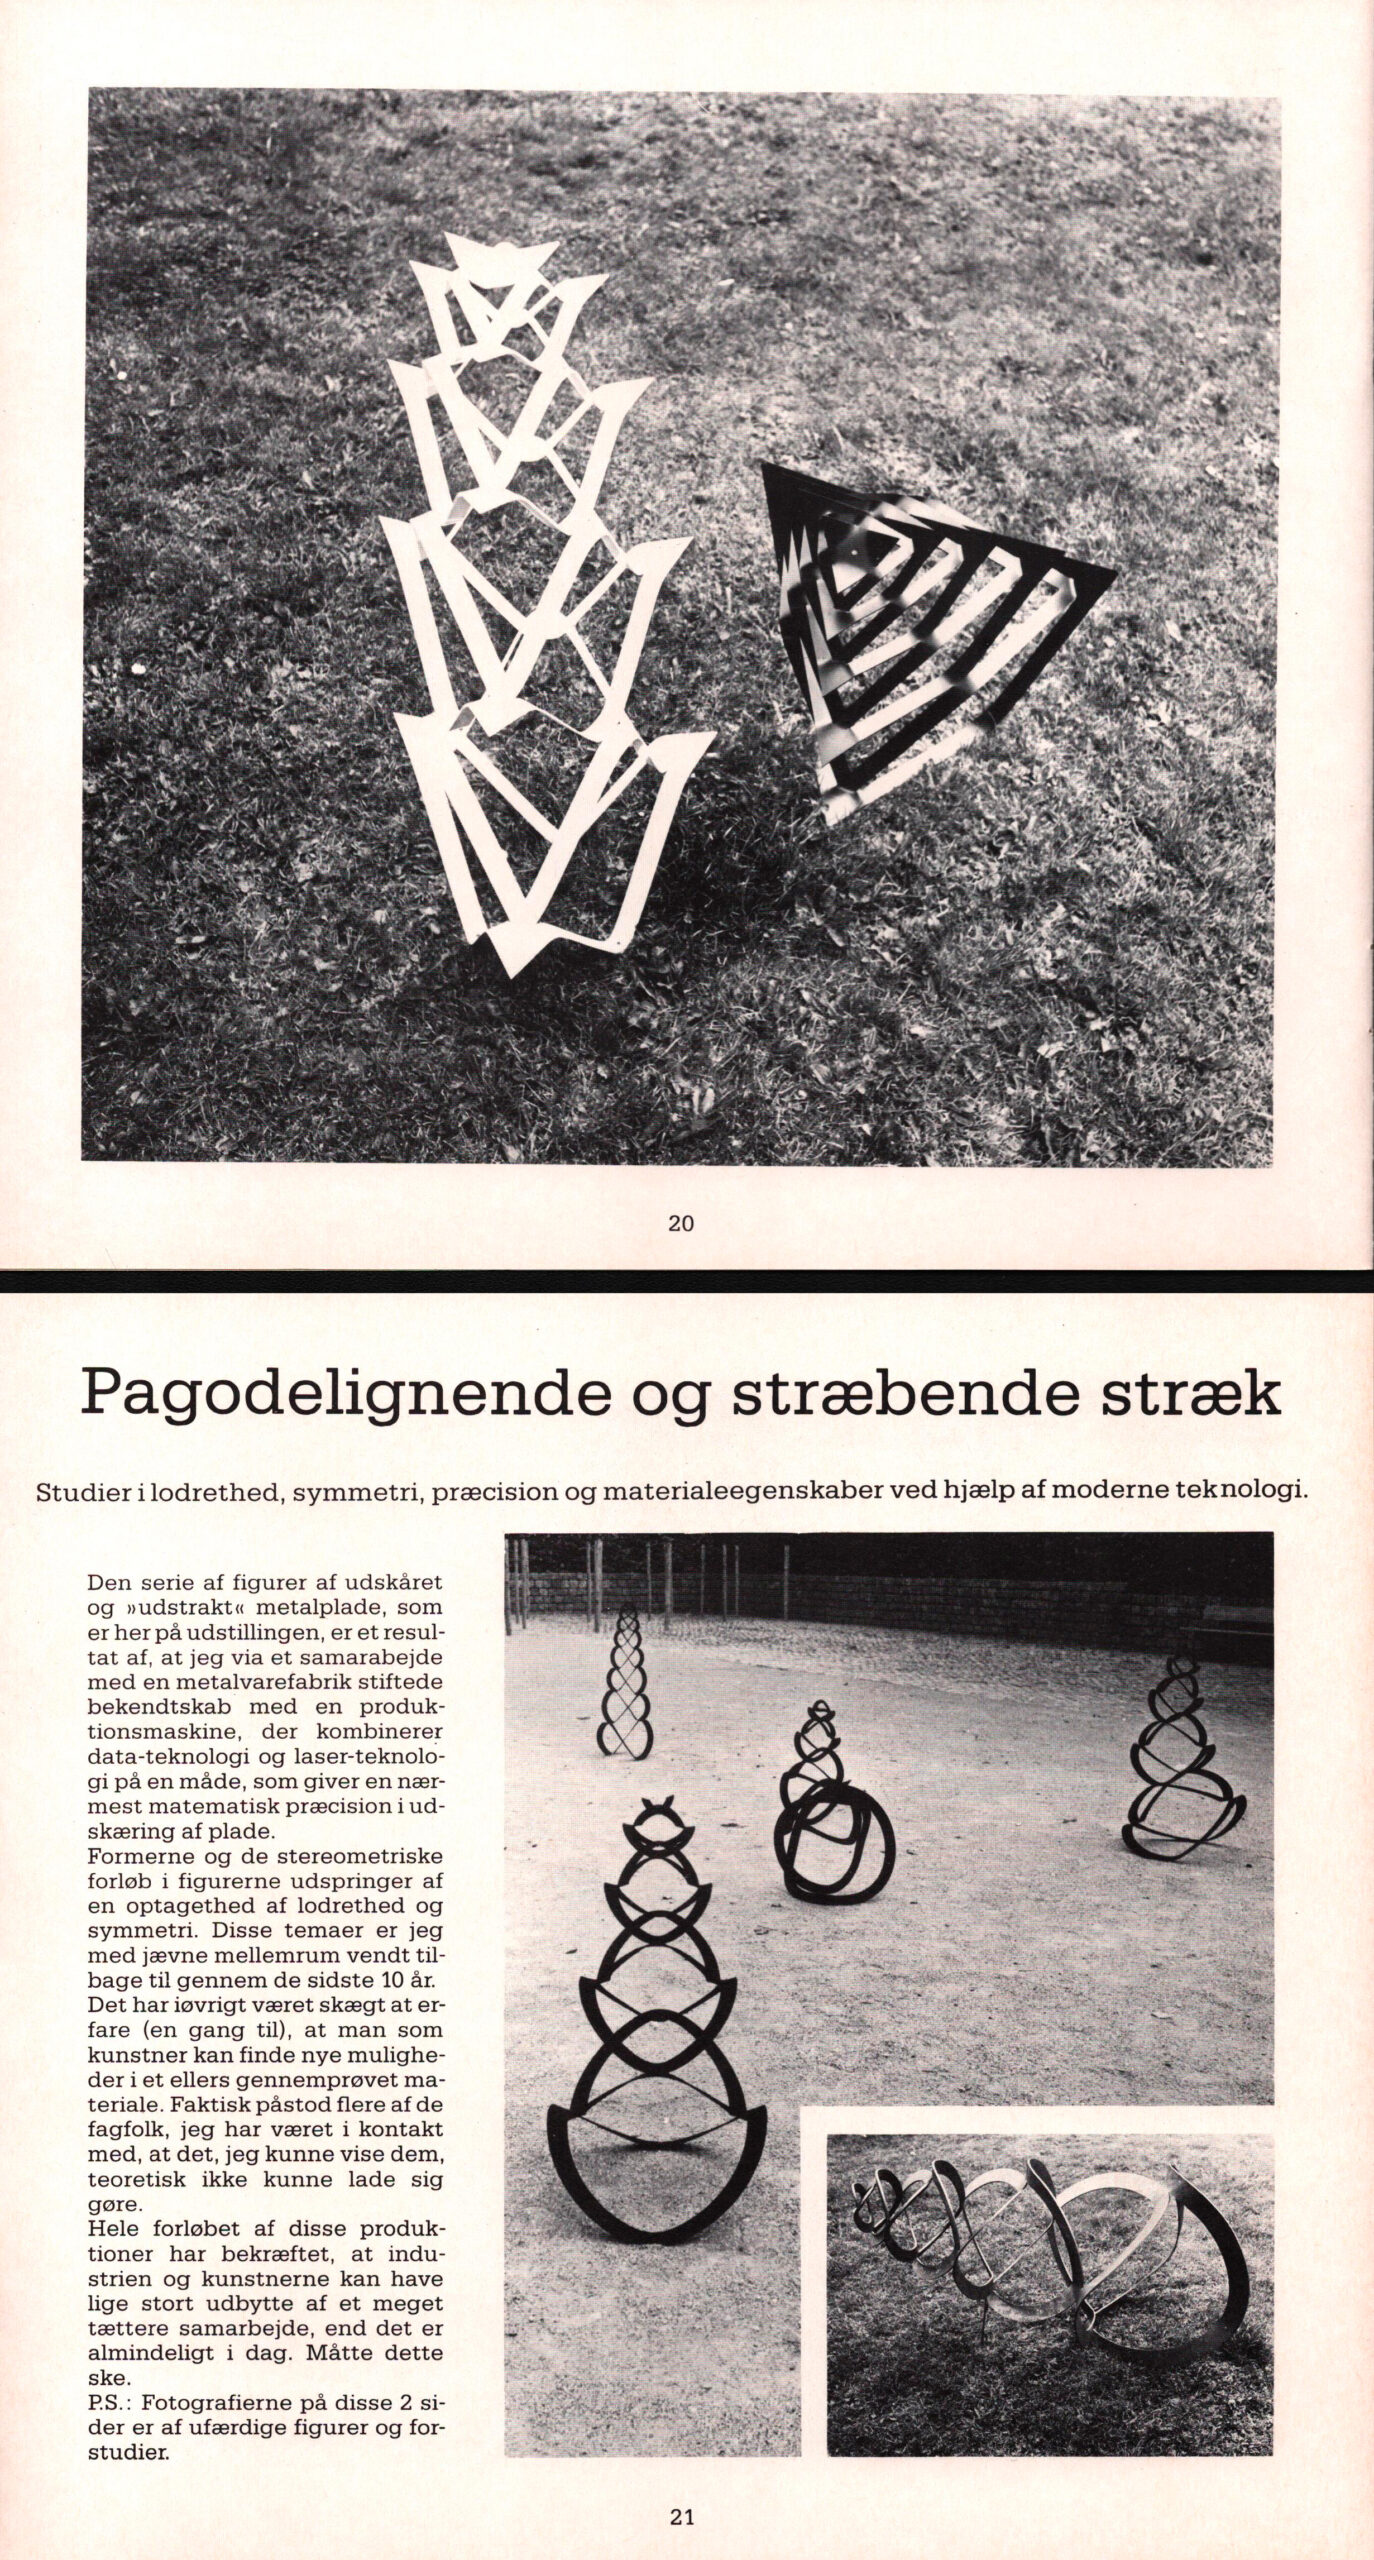 Pagodelignende og stræbende stræk. Steen Krarup Jensen. Fra kataloget til udstillingen Skulpturtur. Kunstbygningen, Århus.